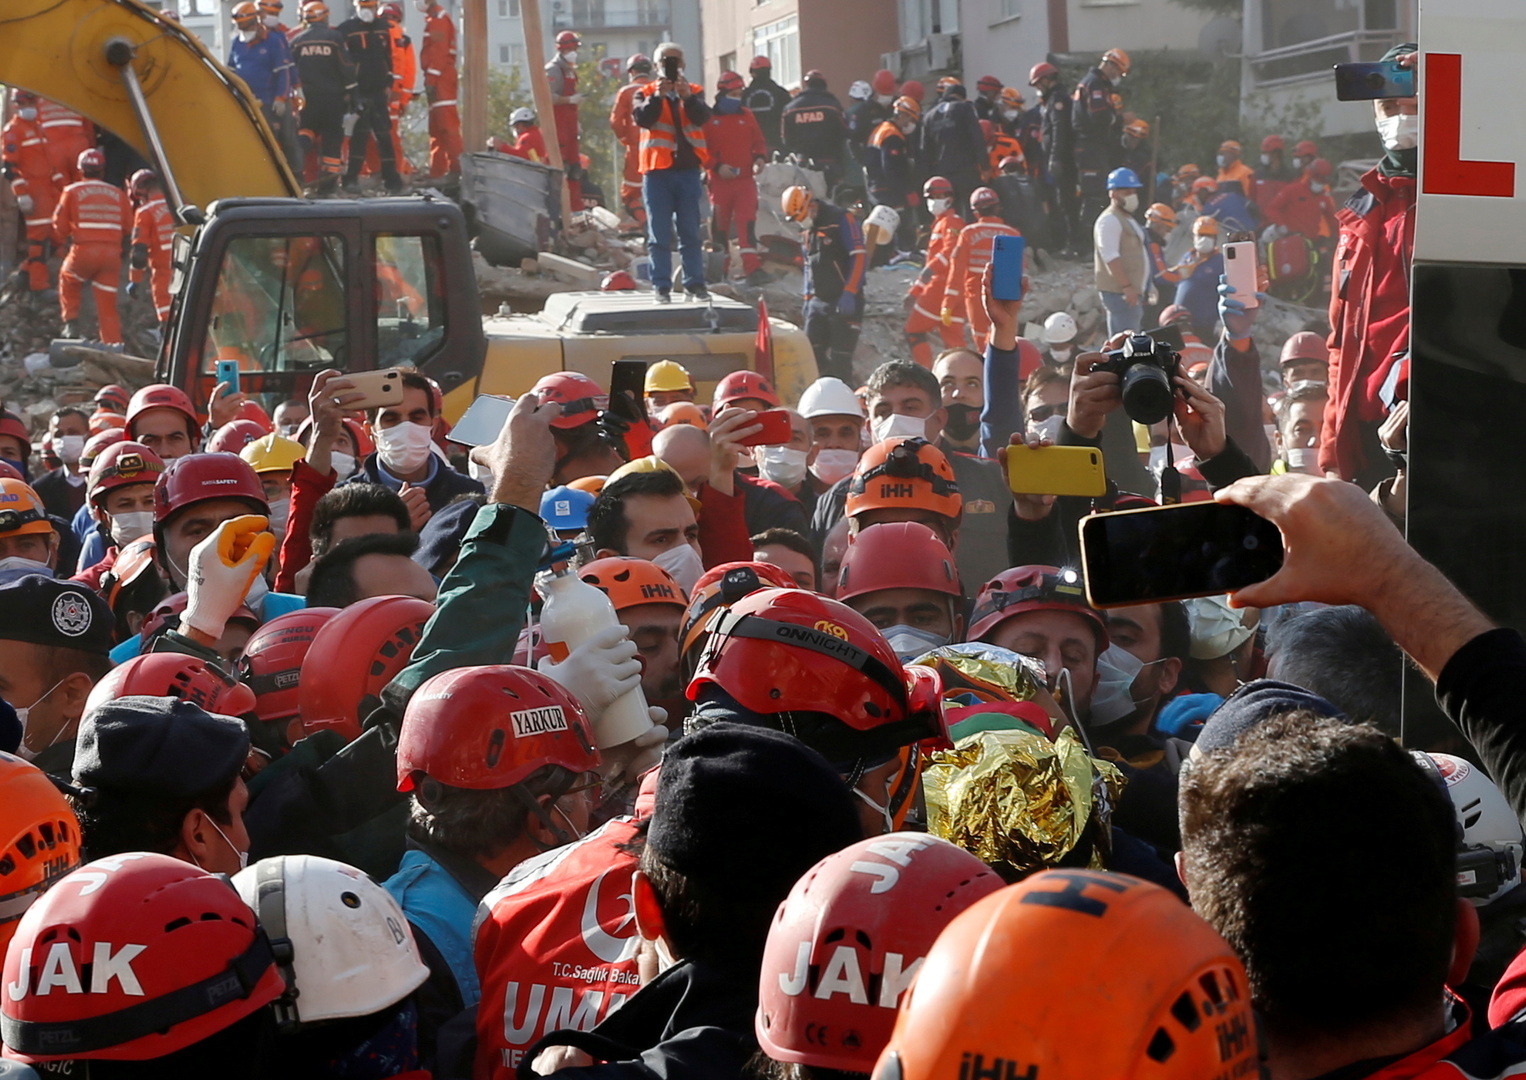 انتهاء عمليات الإنقاذ والبحث عن ضحايا في إزمير التركية عقب الزلزال المدمر